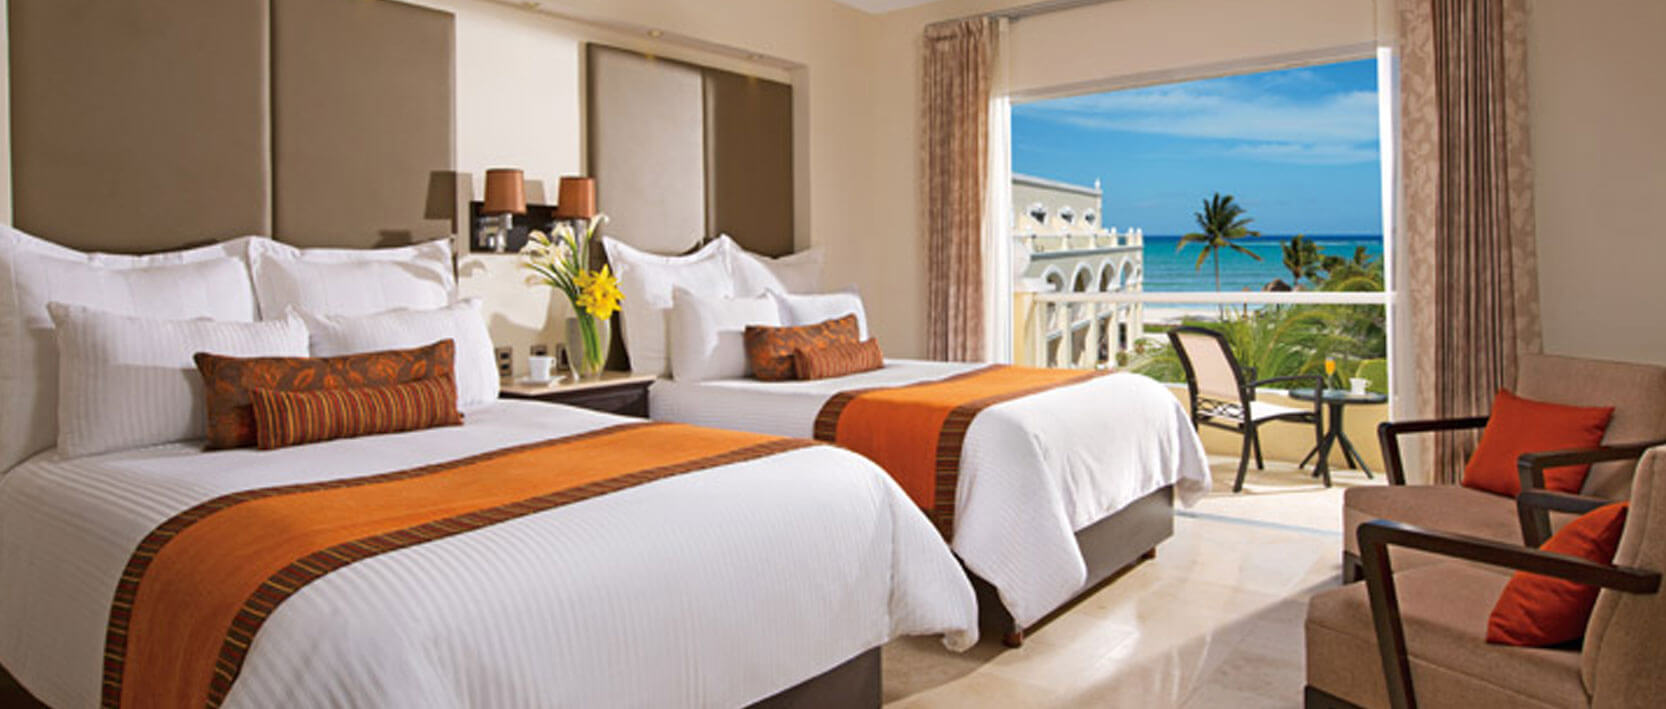 Dreams Tulum Resort Accommodations - Deluxe Ocean View